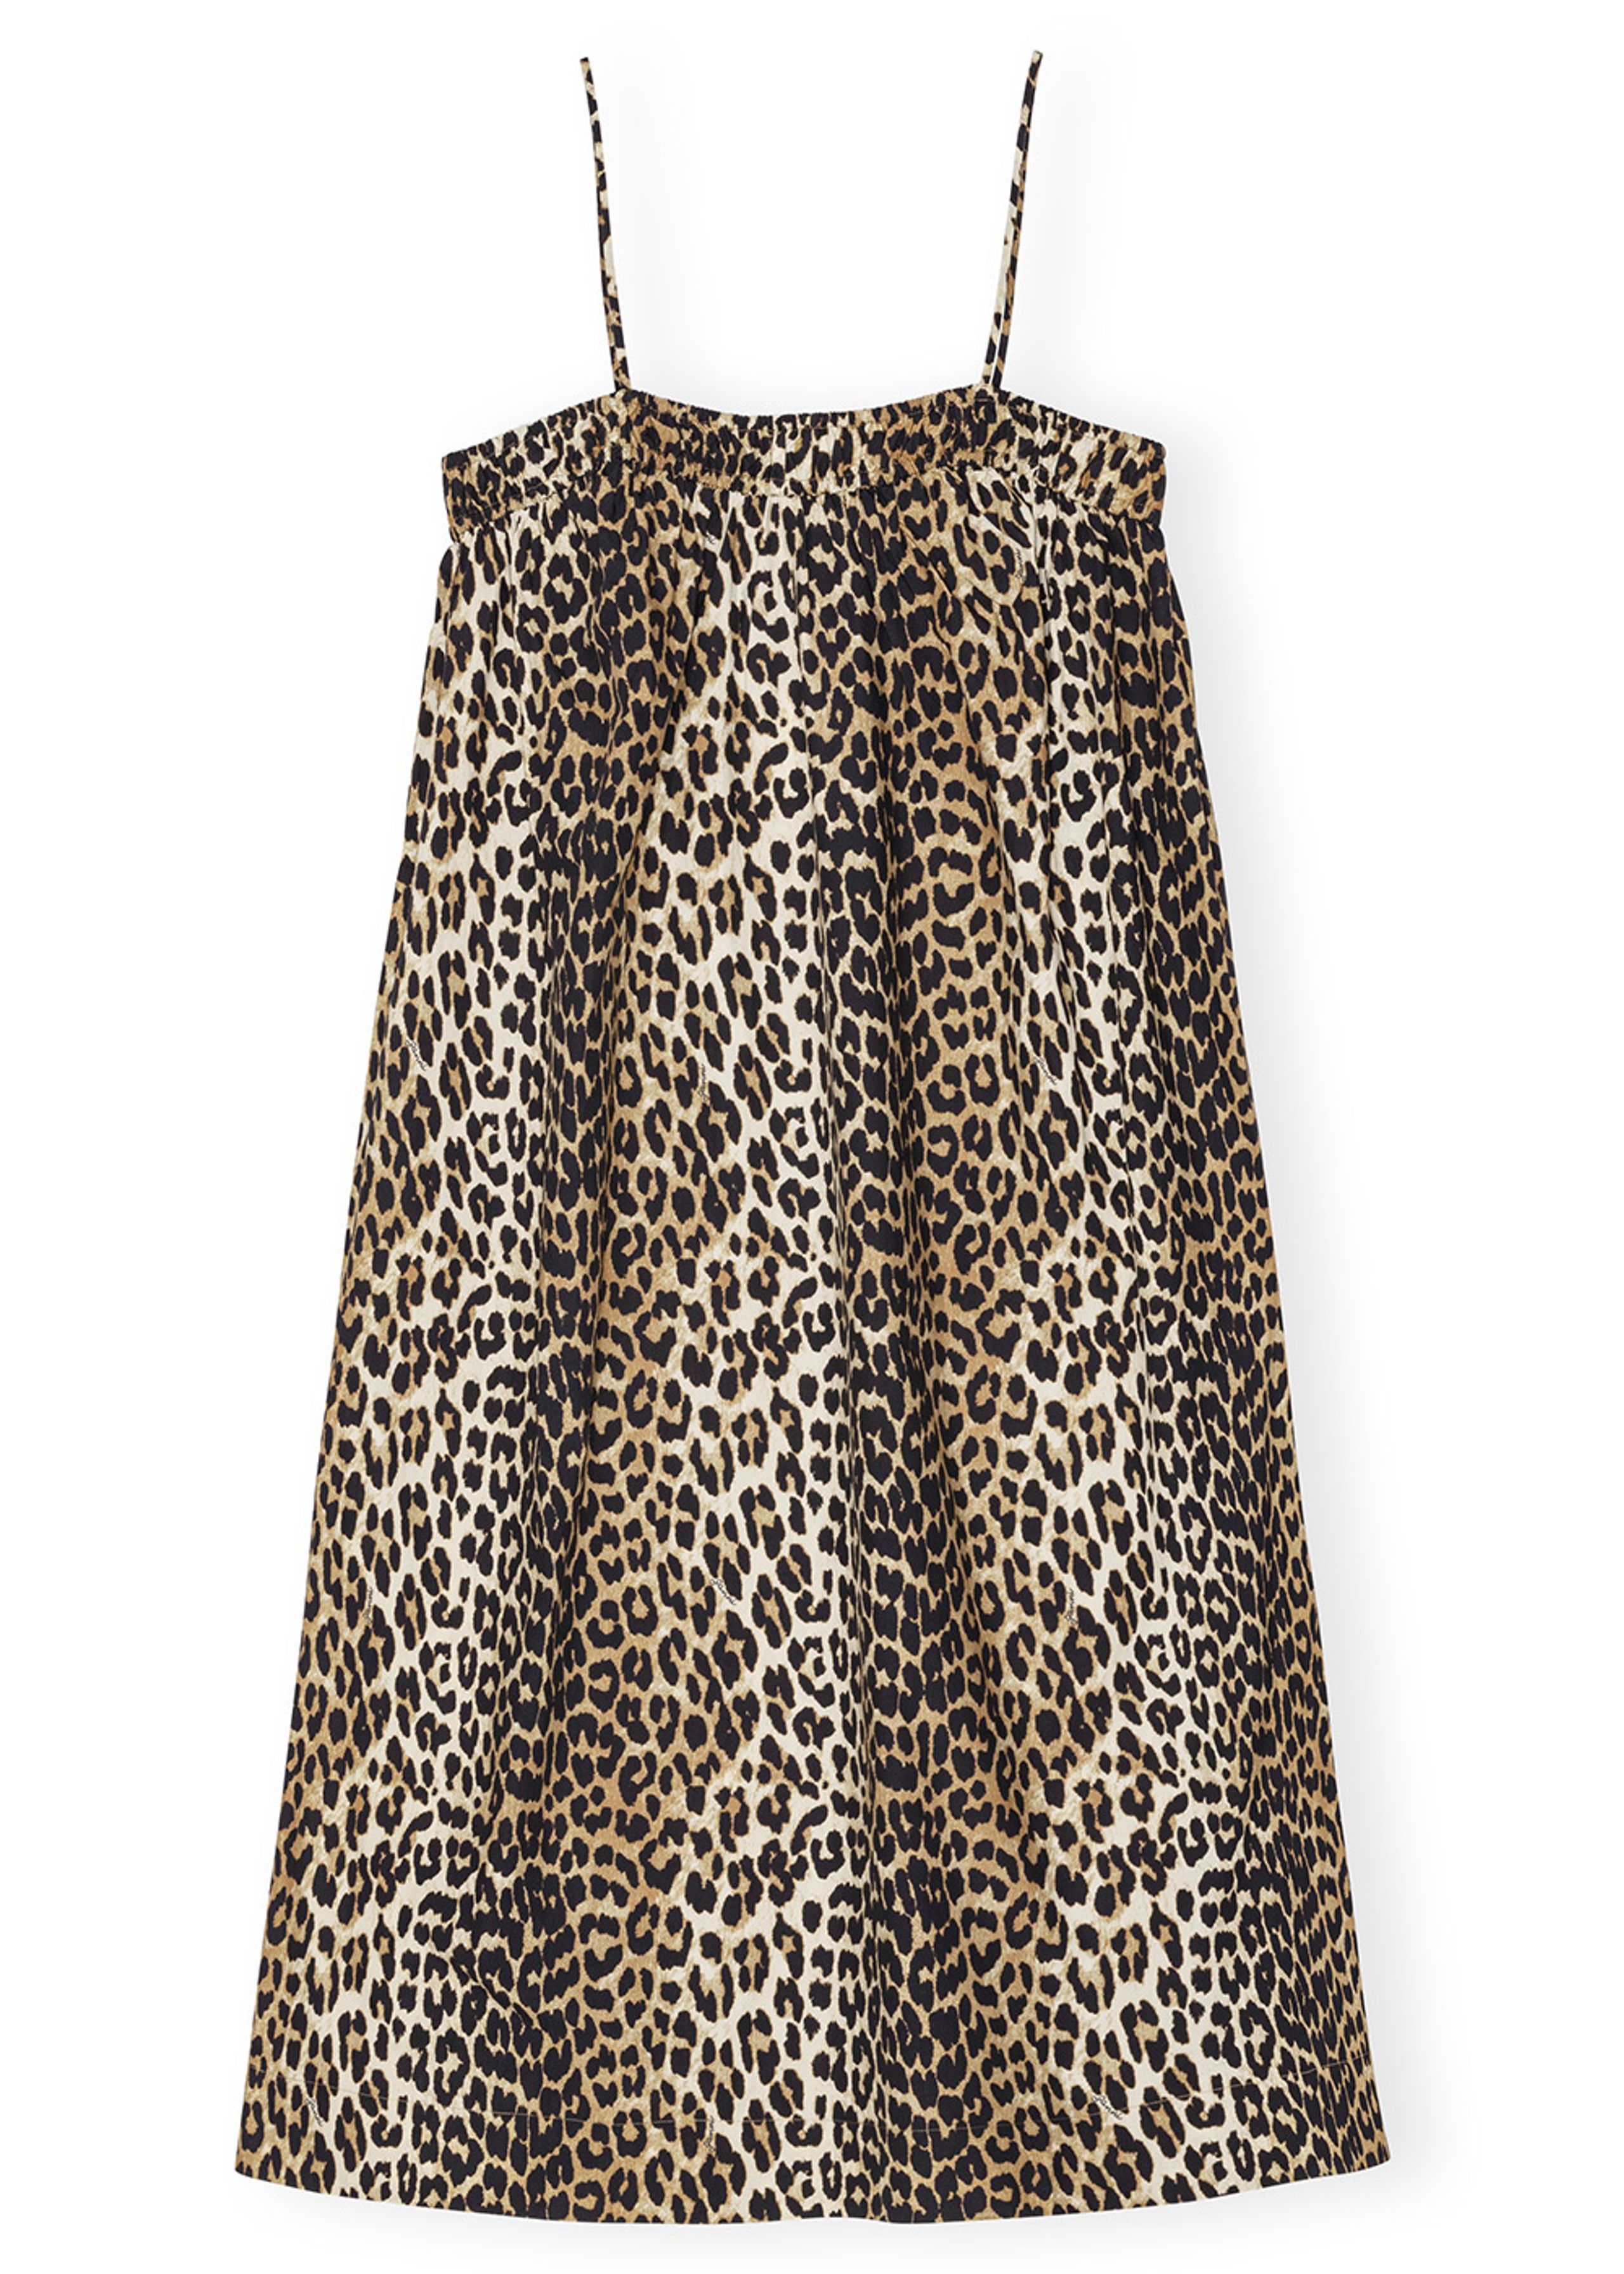 Ganni - Jurk - Printed Cotton Midi Strap Dress - Leopard